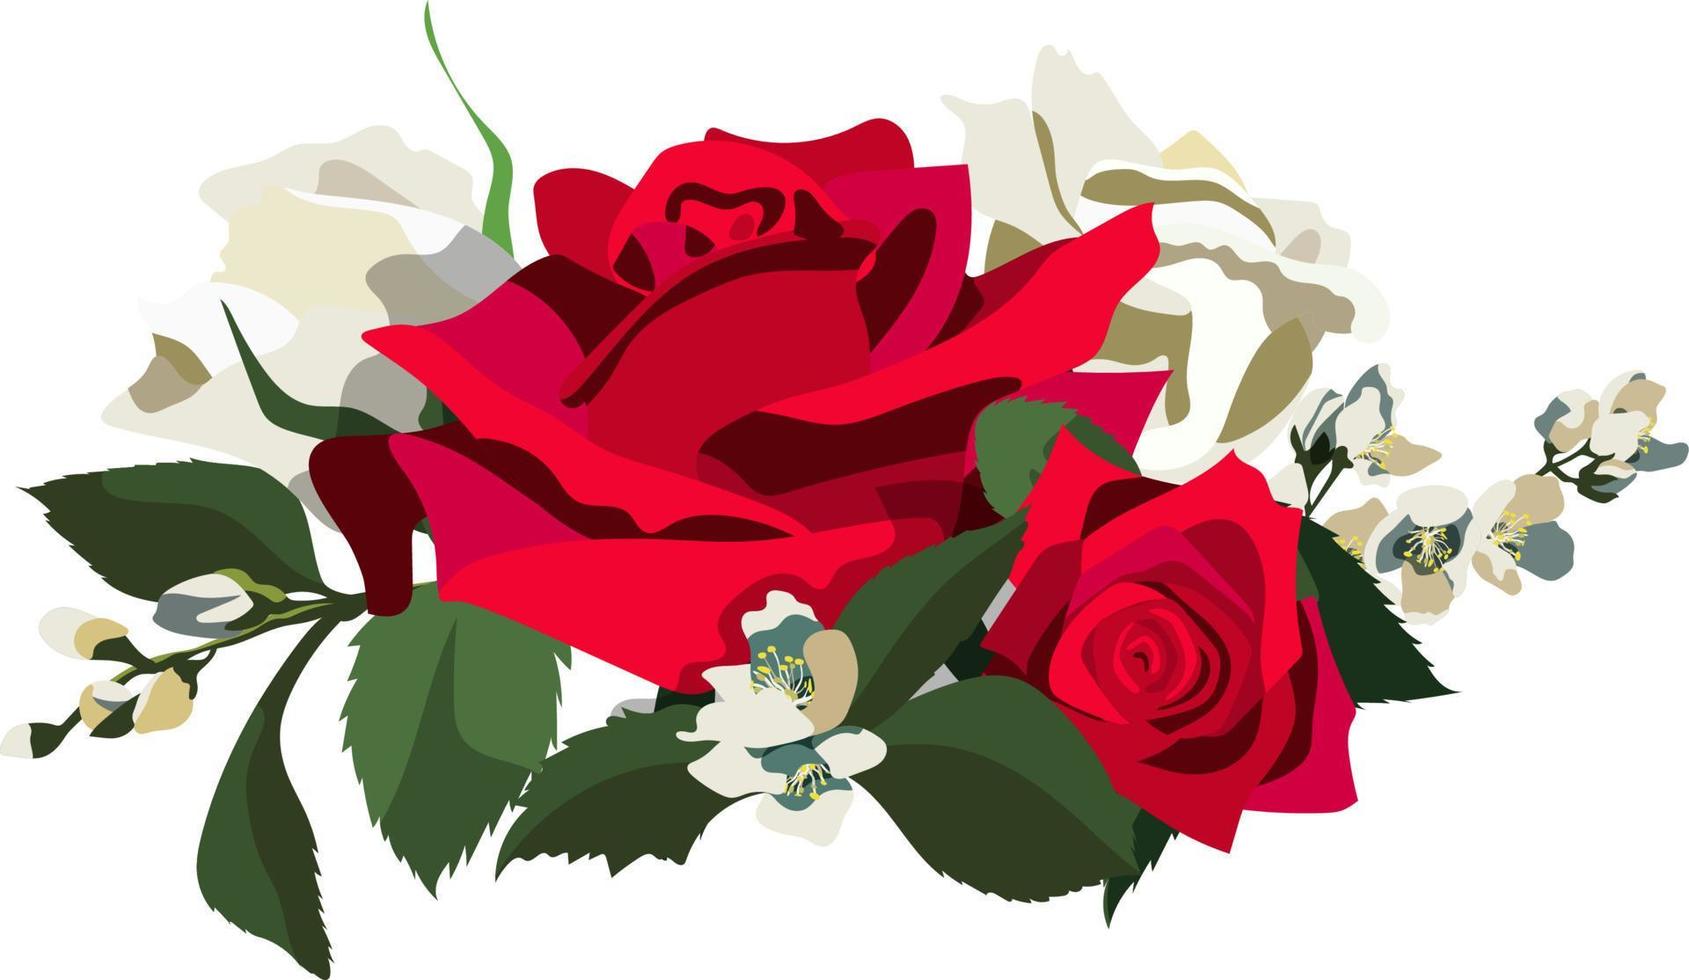 fond floral de style vintage avec des roses rouges et blanches, des feuilles et des branches de jasmin. isolé sur fond blanc vecteur